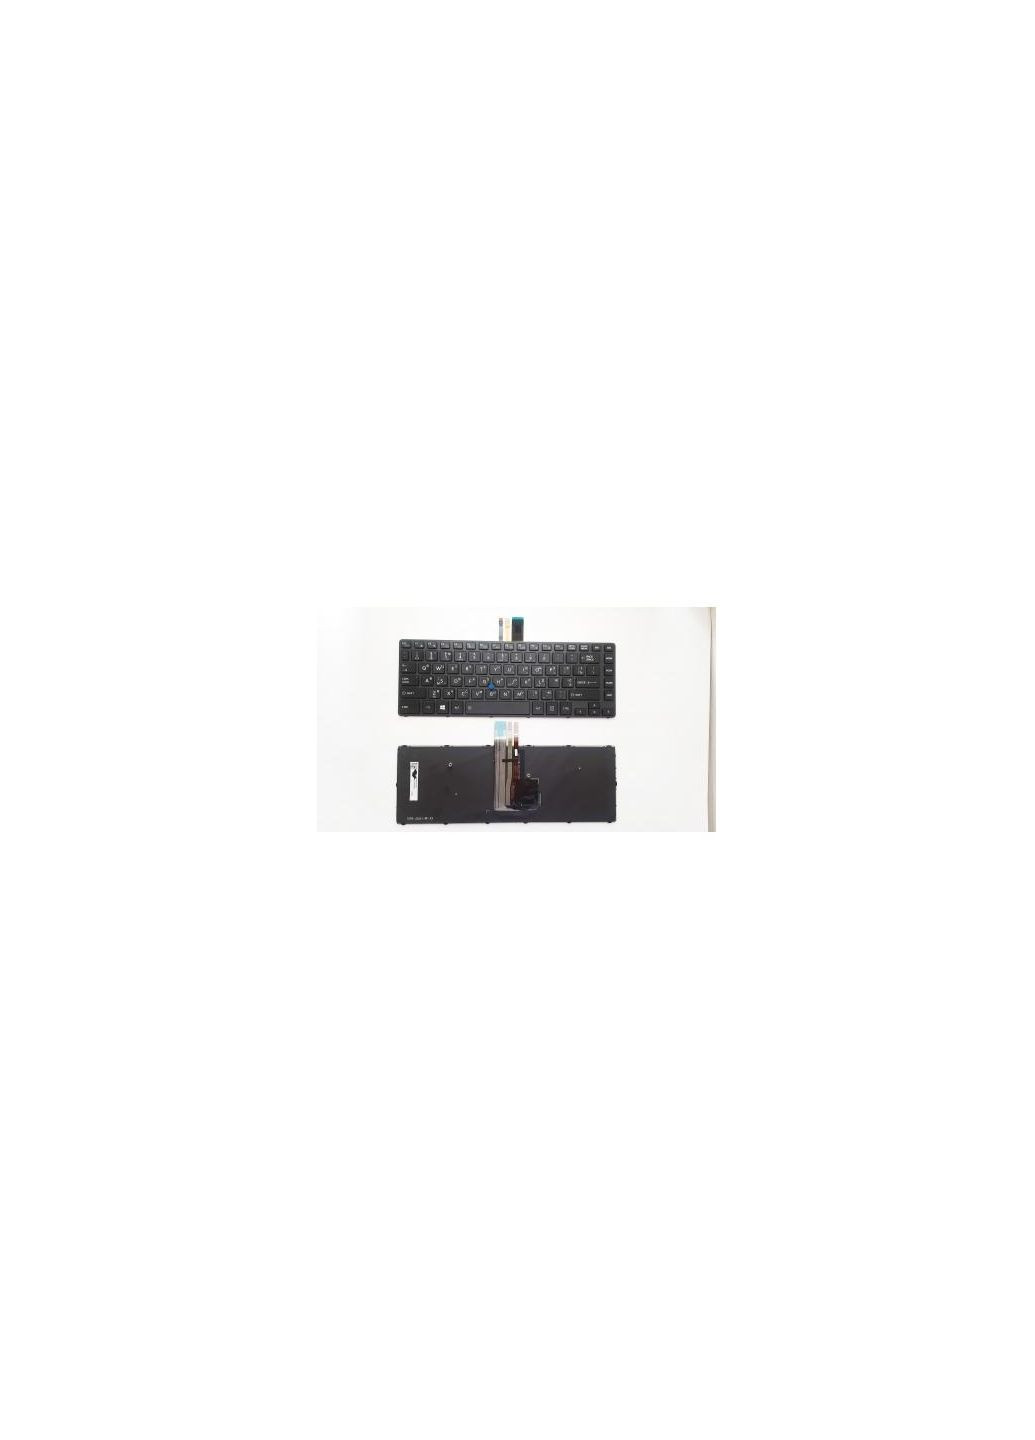 Клавиатура ноутбука Tecra A40C Series черная с черной рамкой с подсветкой U (A46167) Toshiba tecra a40-c series черная с черной рамкой с тп с п (276706377)